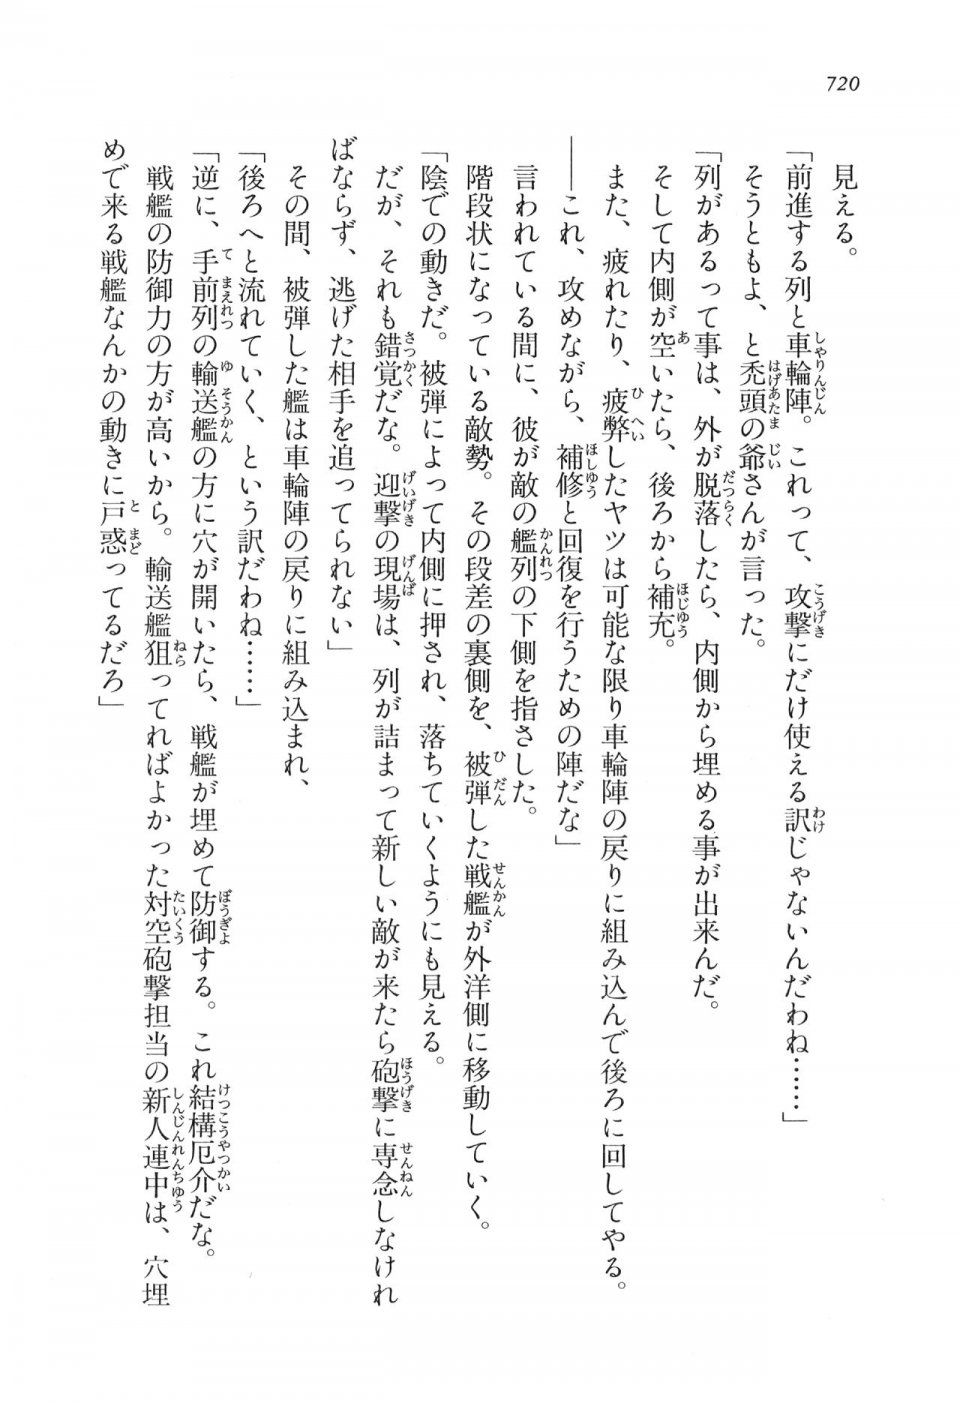 Kyoukai Senjou no Horizon LN Vol 16(7A) - Photo #720